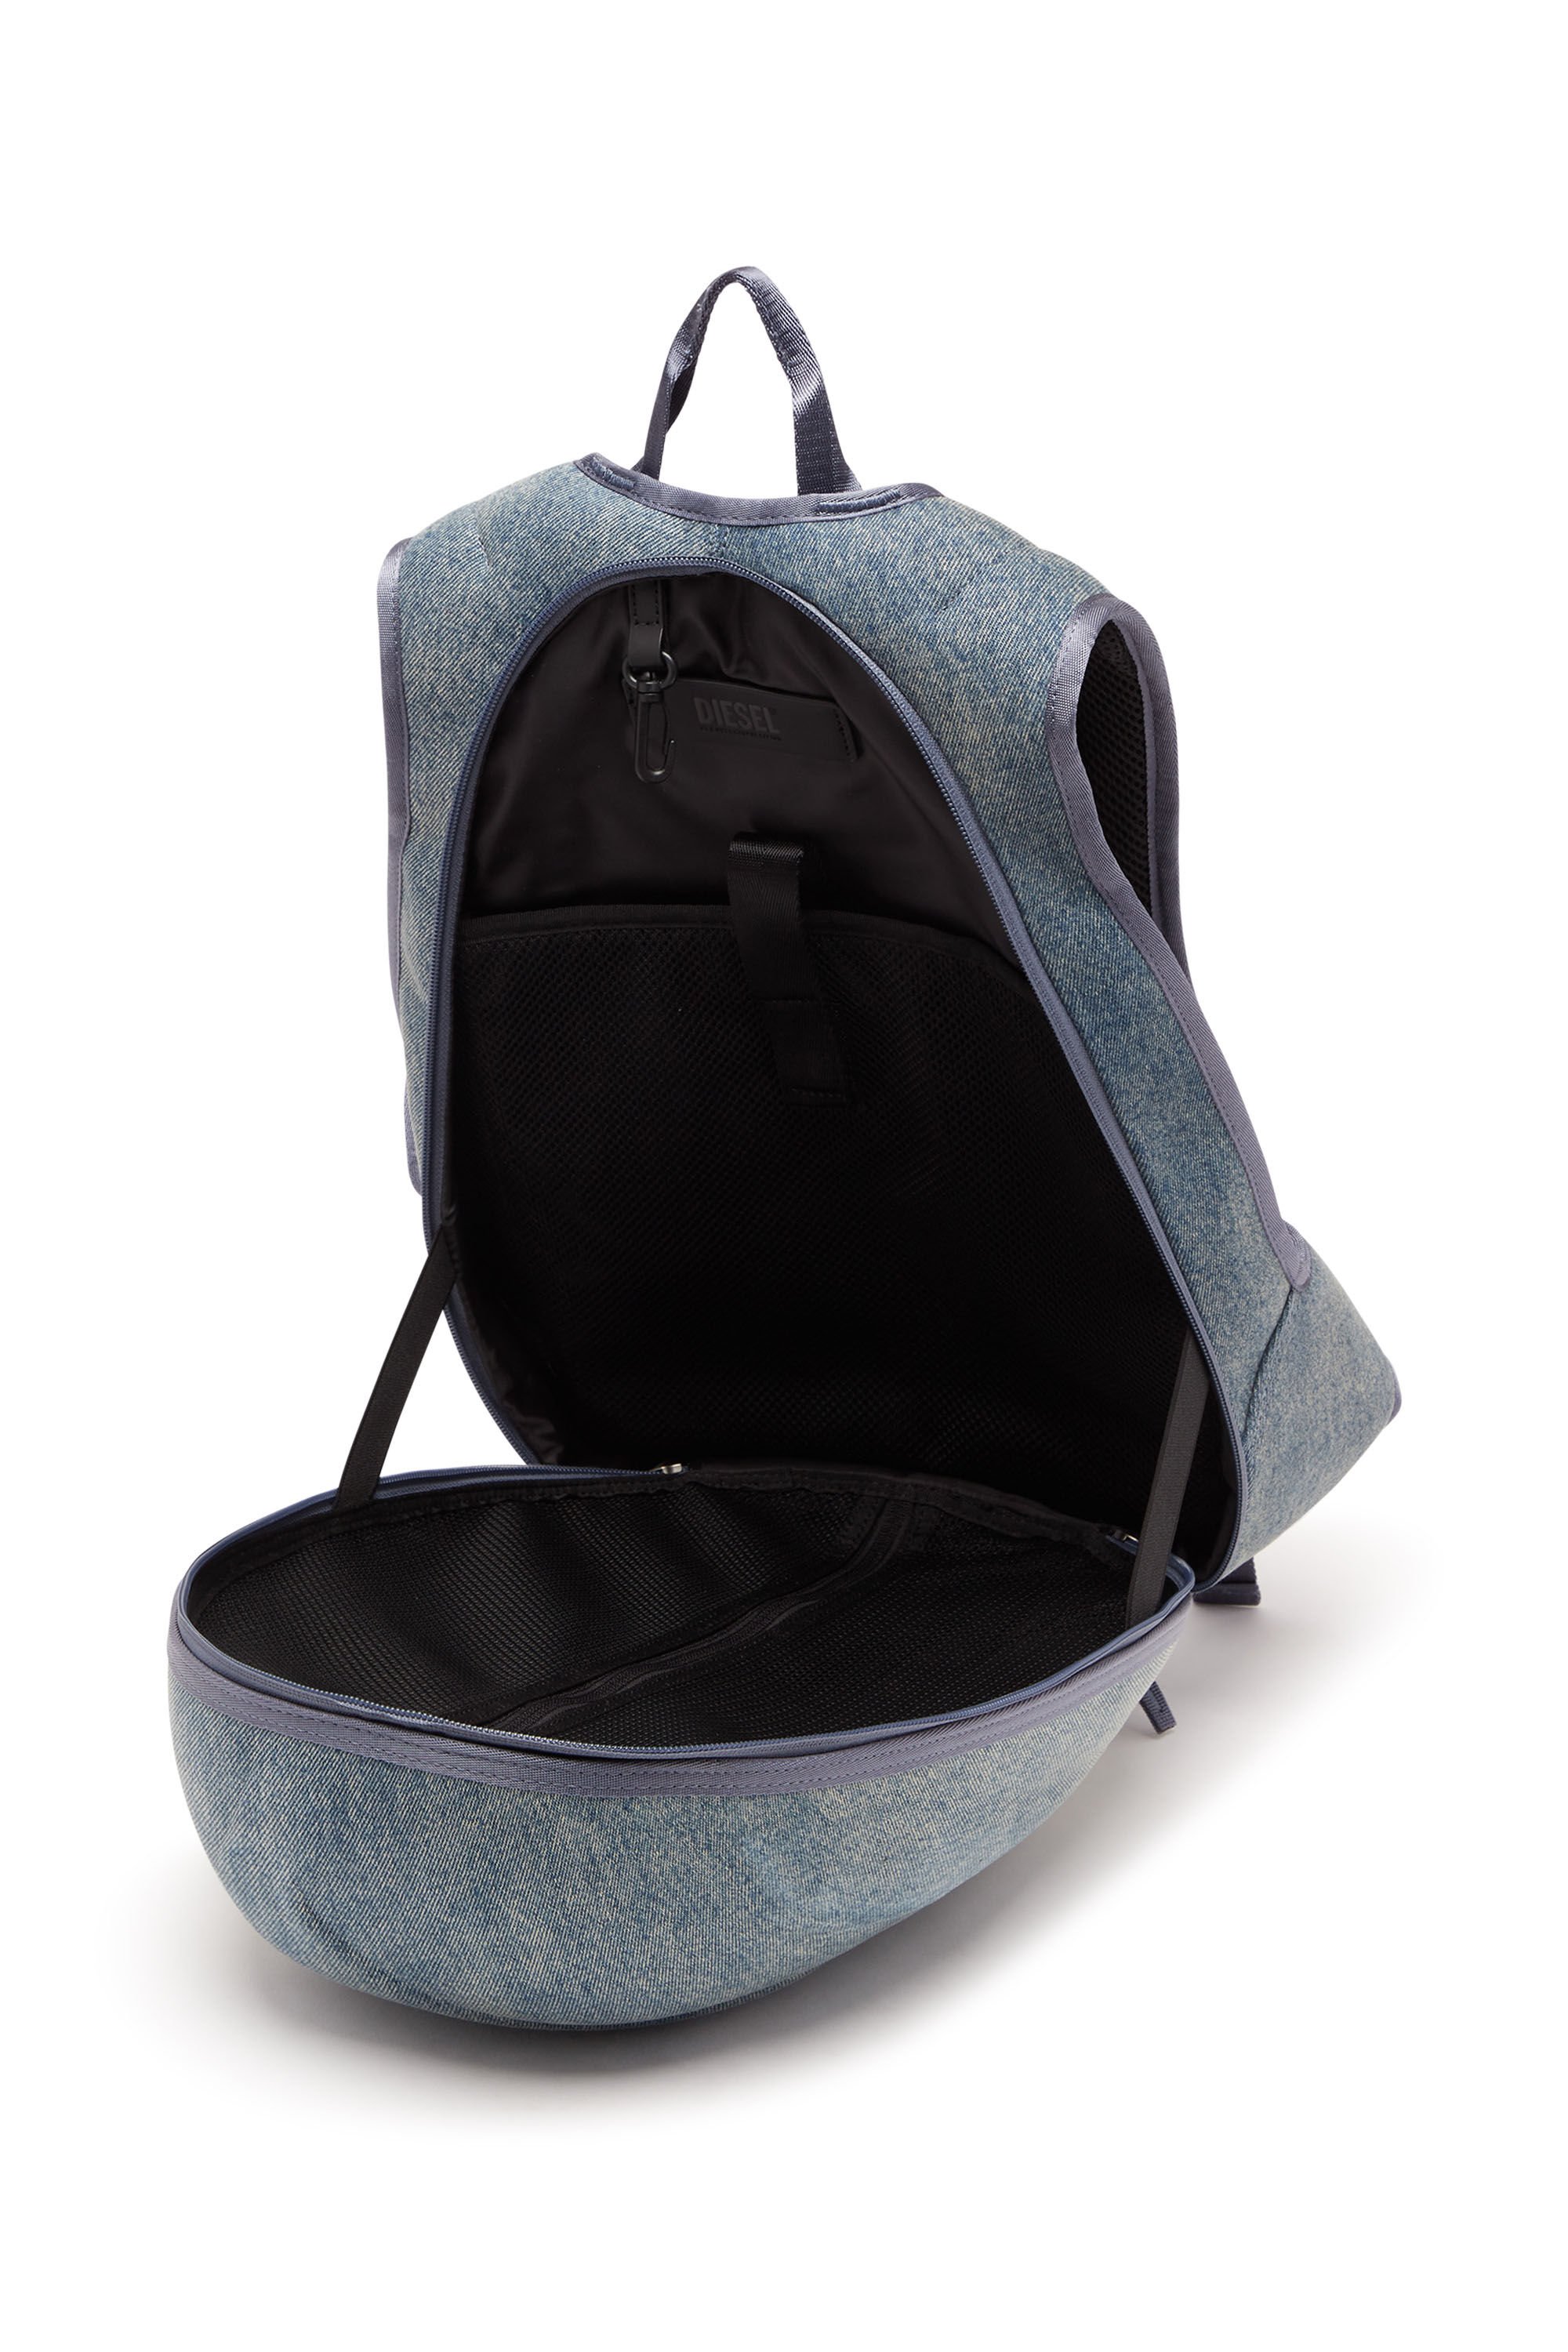 Diesel - 1DR-POD BACKPACK, Man 1DR-Pod Backpack - Hard shell denim backpack in Multicolor - Image 2